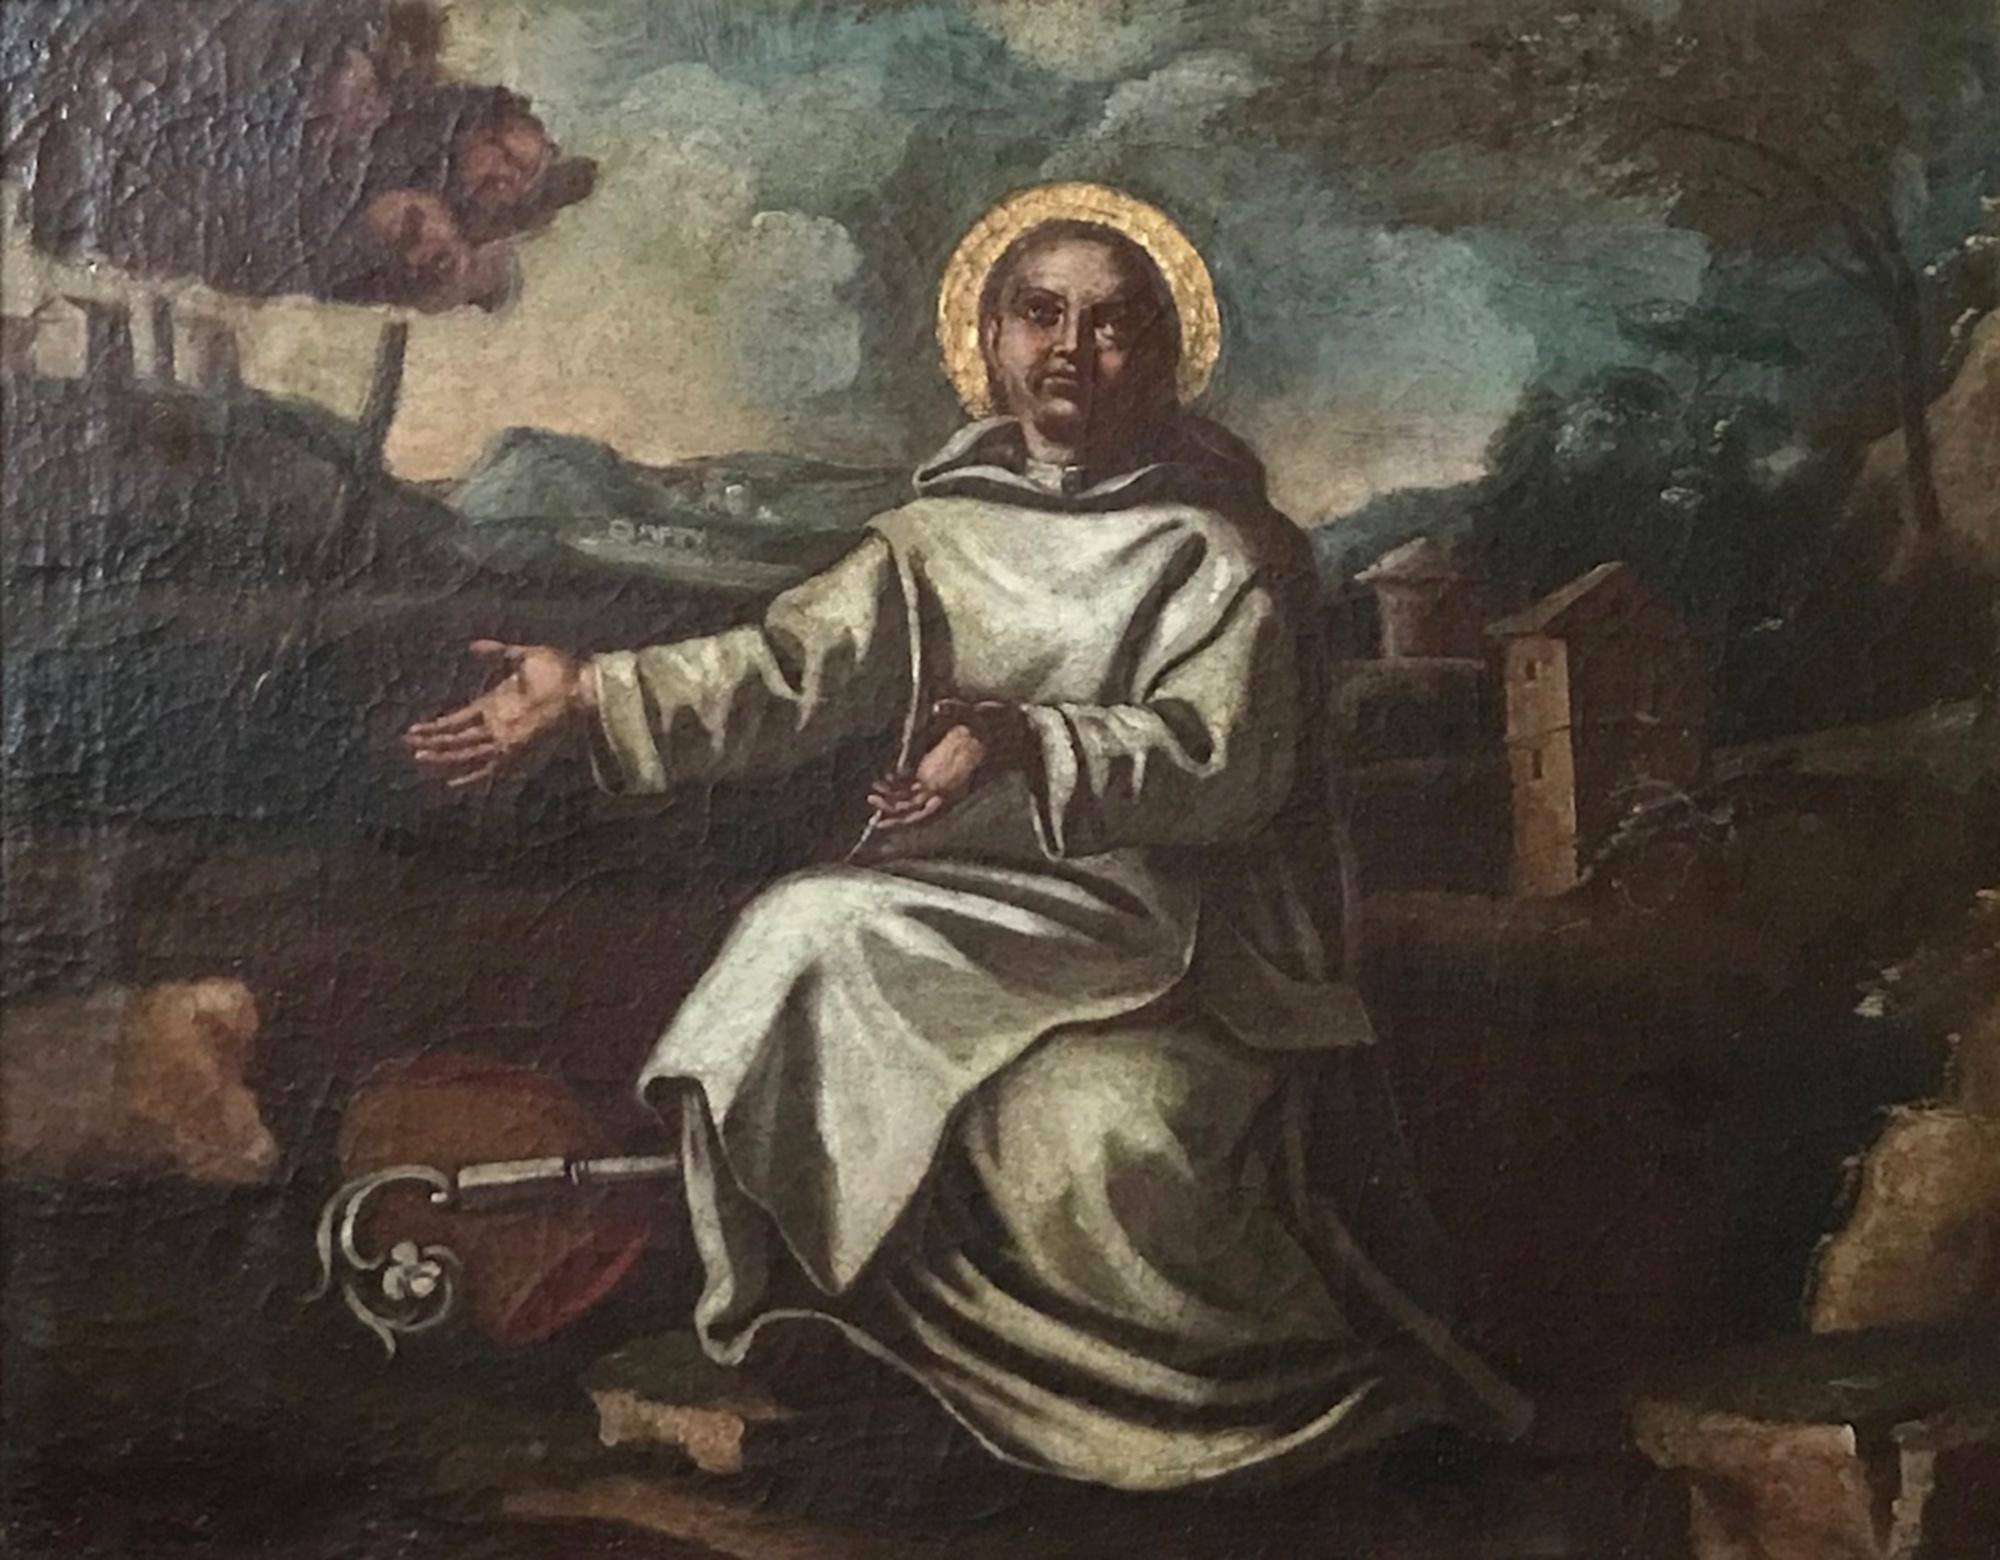 Peinture à l'huile ancienne du 17e siècle représentant Saint Bernard de Clairvaux. École d'espagnol.

L'expression dramatique et l'utilisation parfaite du clair-obscur, l'art des effets d'ombre et de lumière, font de cette peinture un chef-d'œuvre.